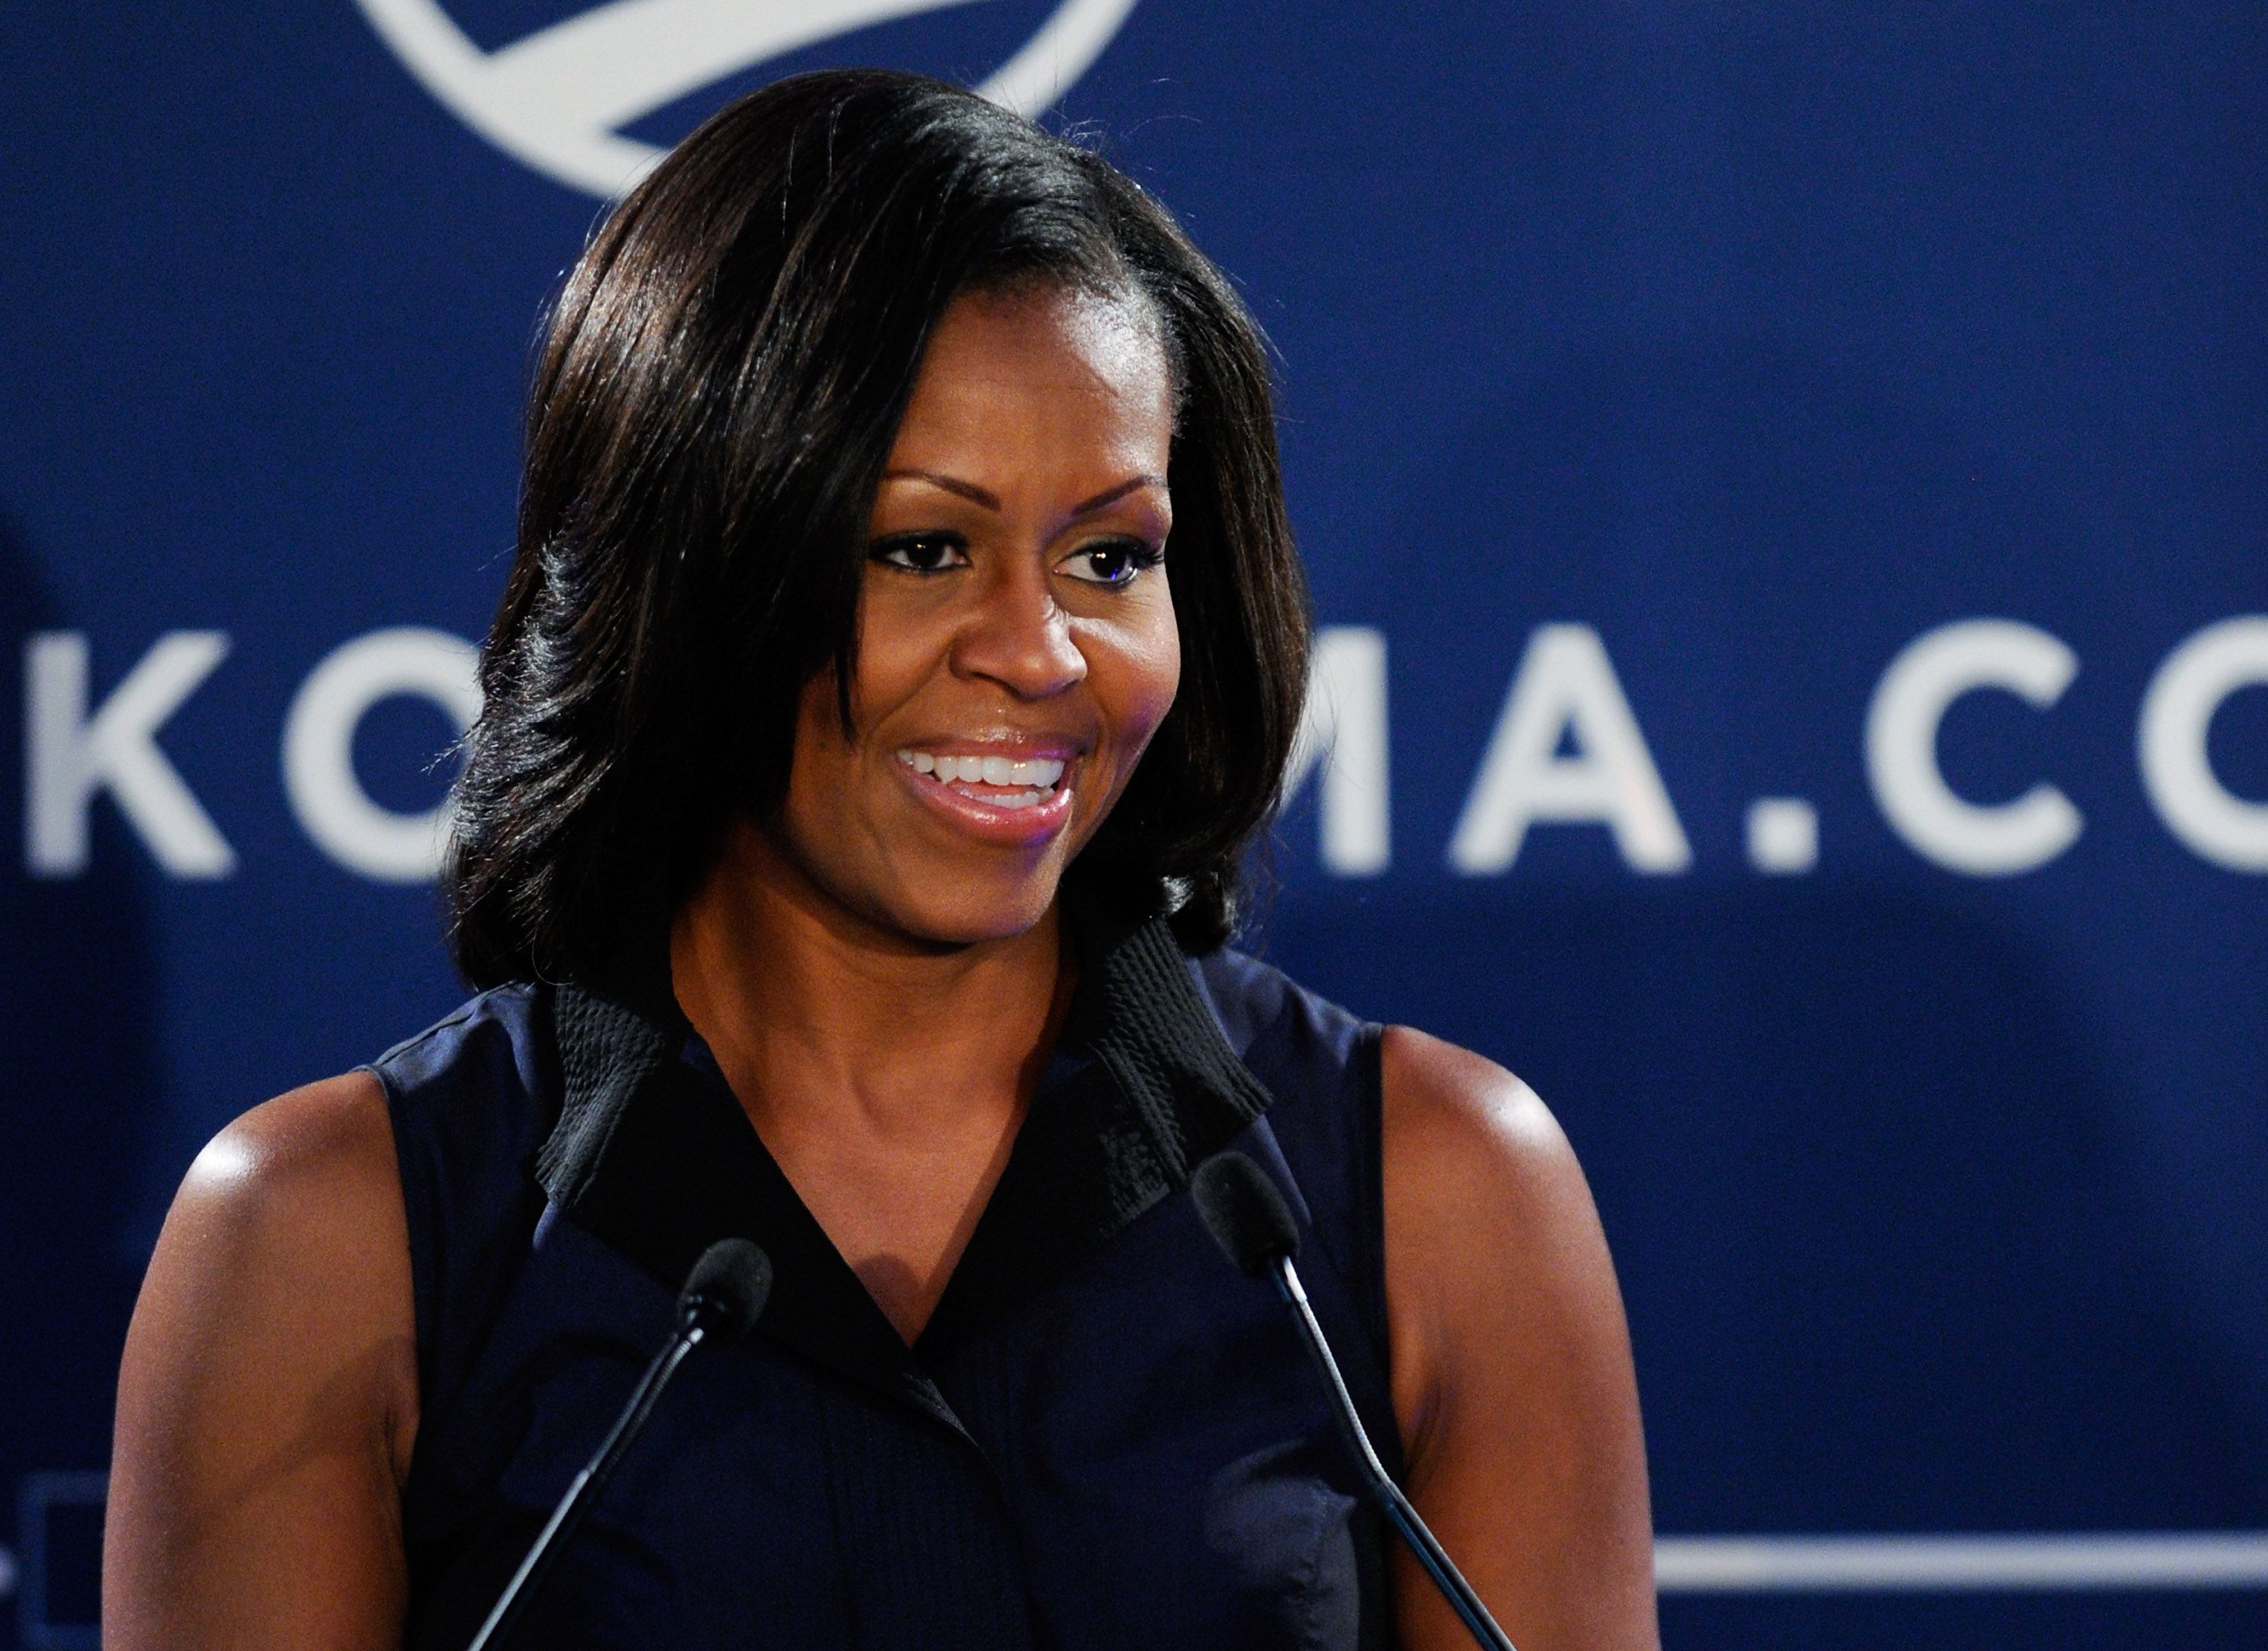 La première dame des États-Unis Michelle Obama | Photo : Getty Images